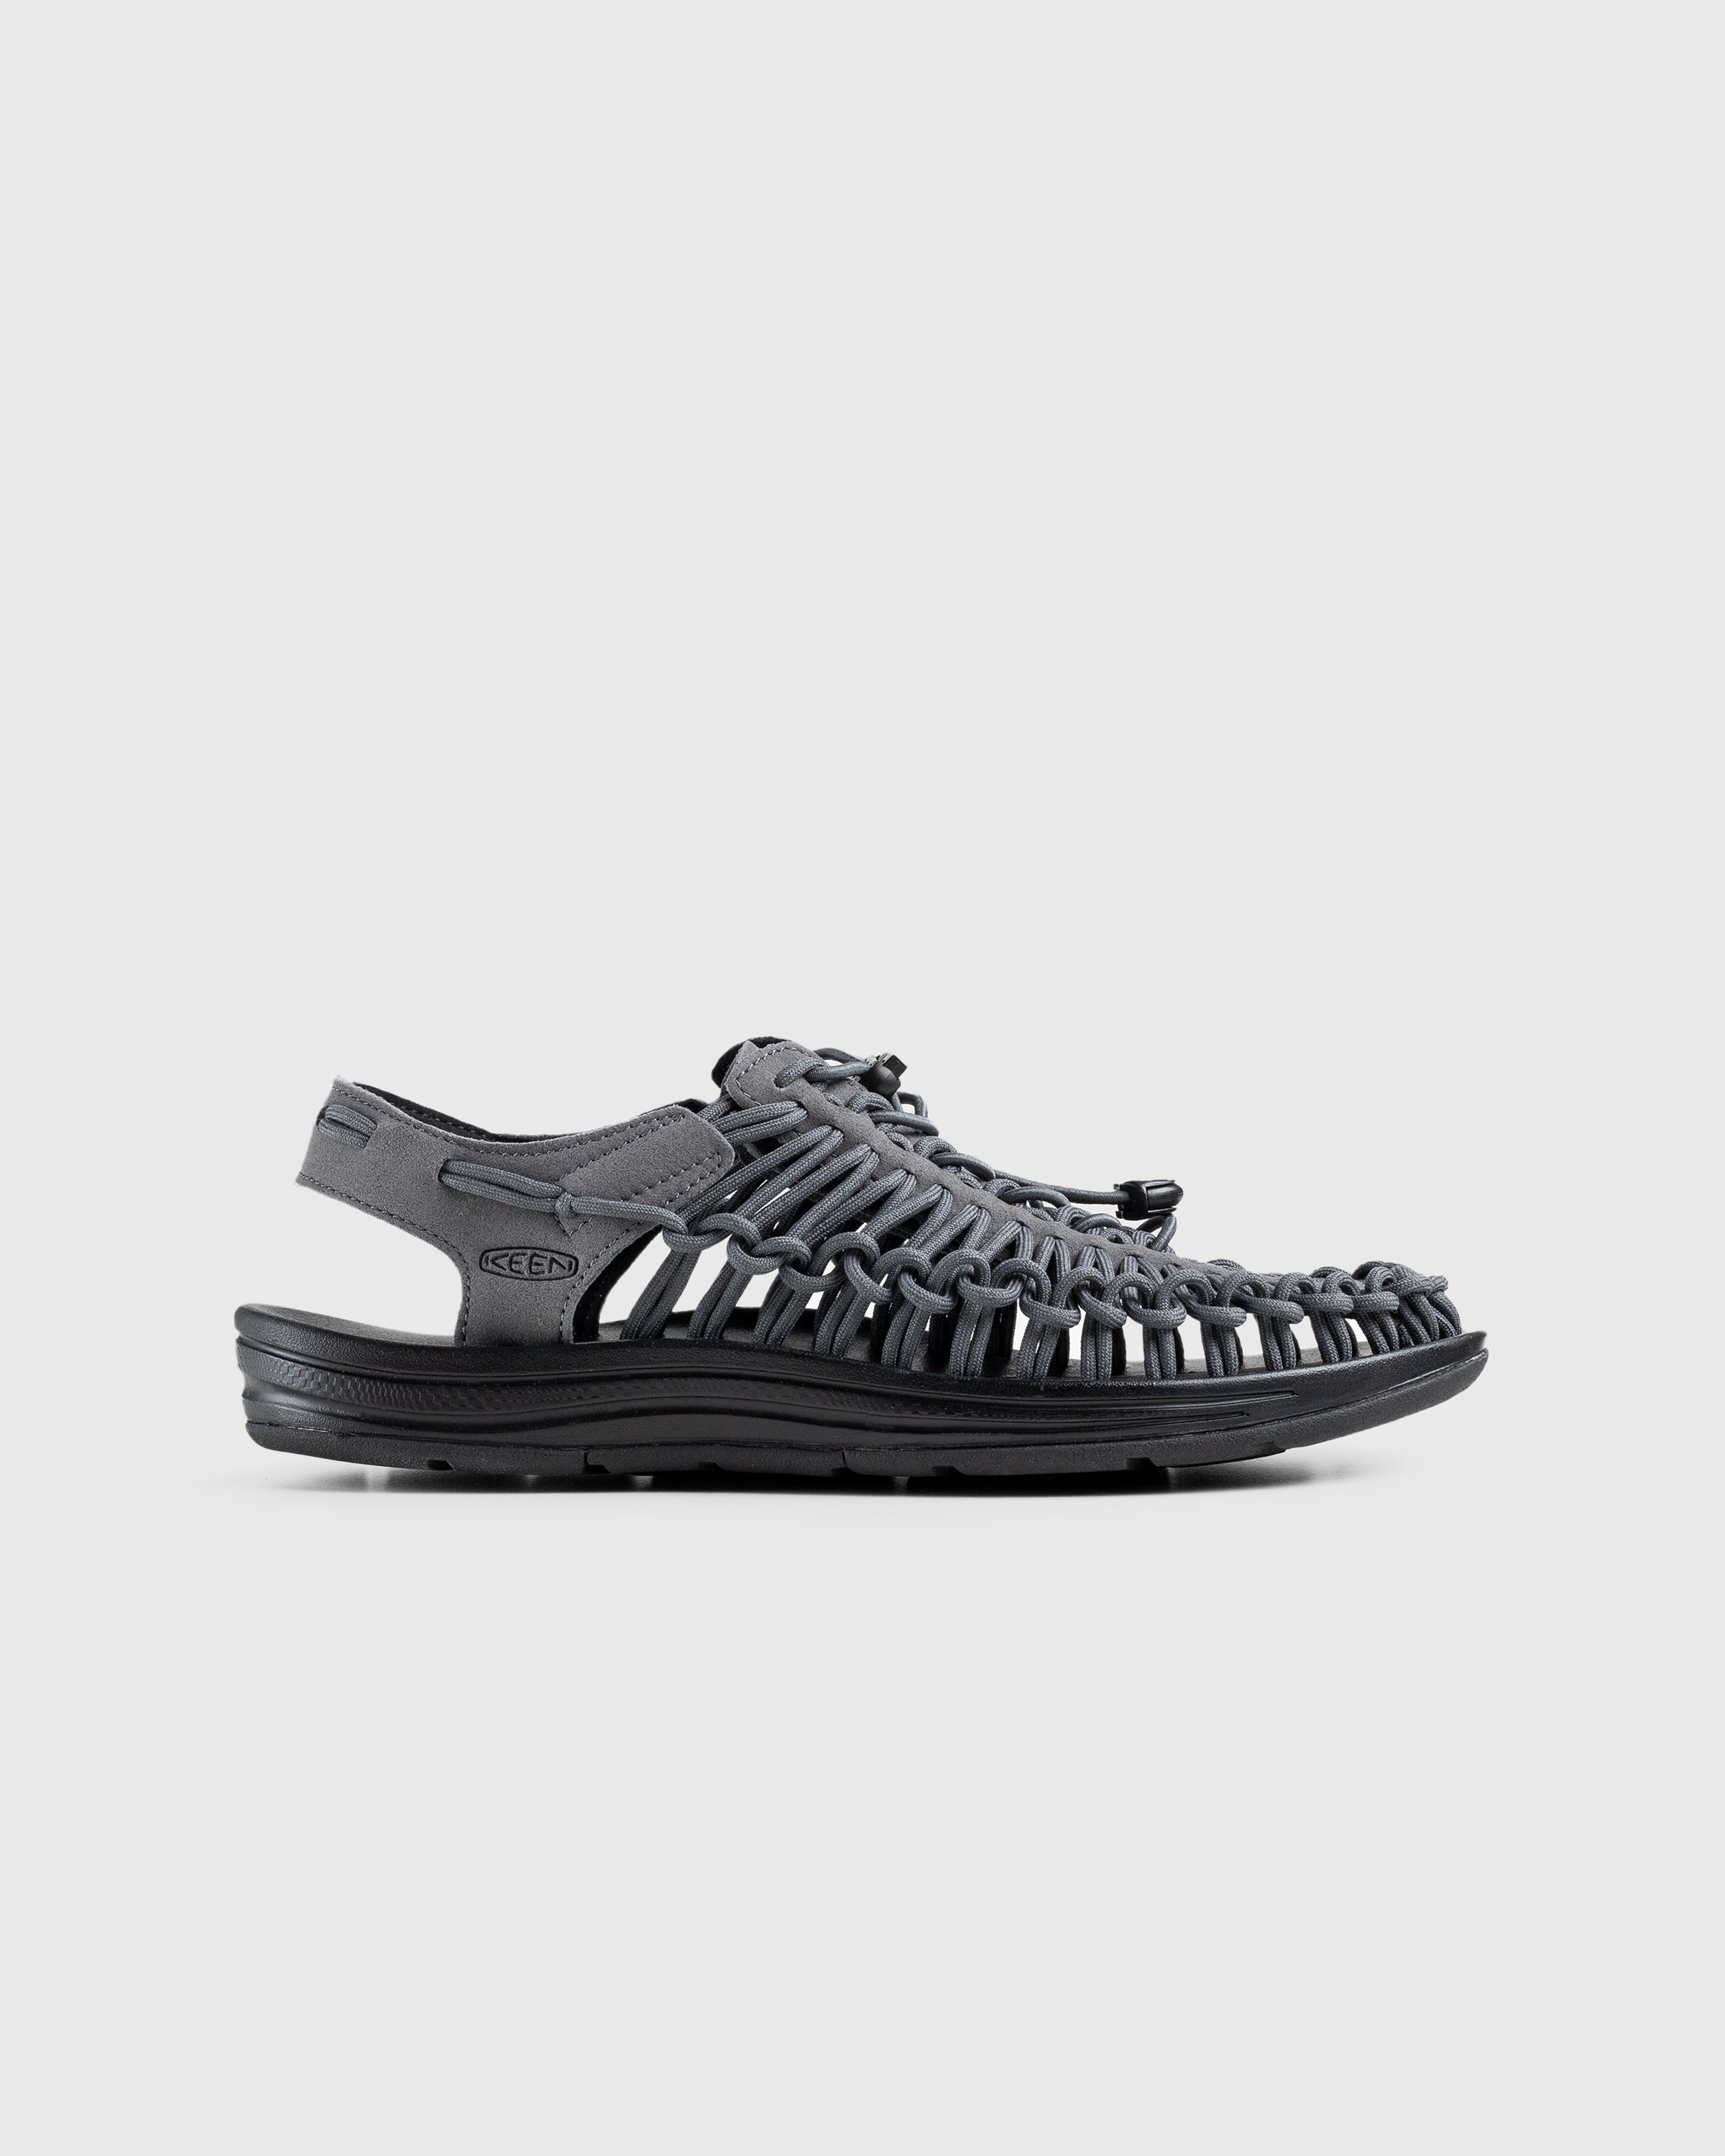 Keen - Uneek Magnet/Black - Footwear - Grey - Image 1